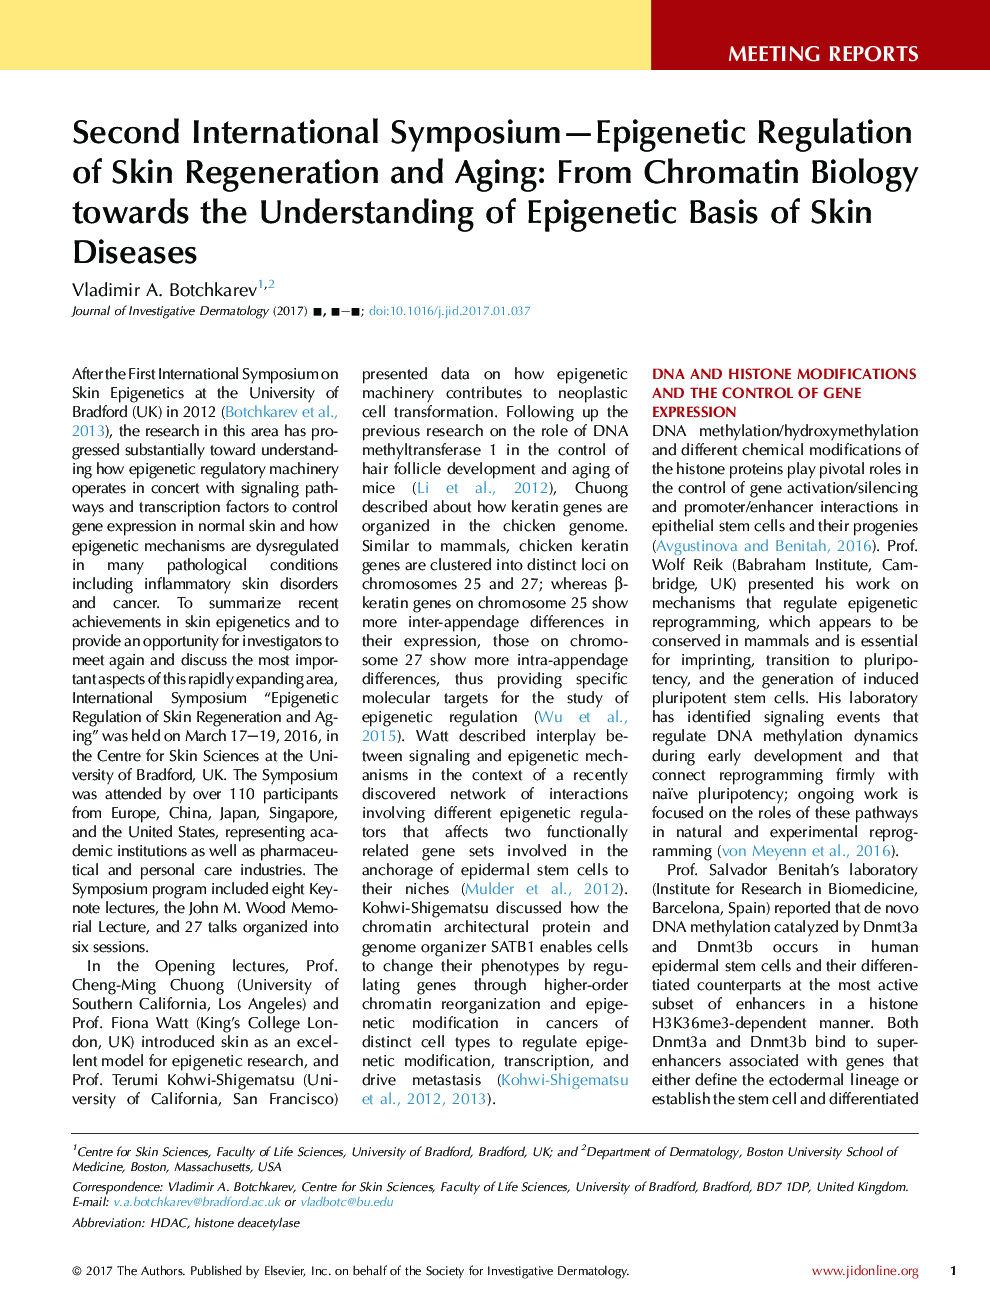 دومین همایش بین المللی سمپوزیوم-اپینژنتیک بازسازی و پیرایش پوست: از زیست شناسی کروماتین به منظور درک اصول اولیه بیماری های پوستی 